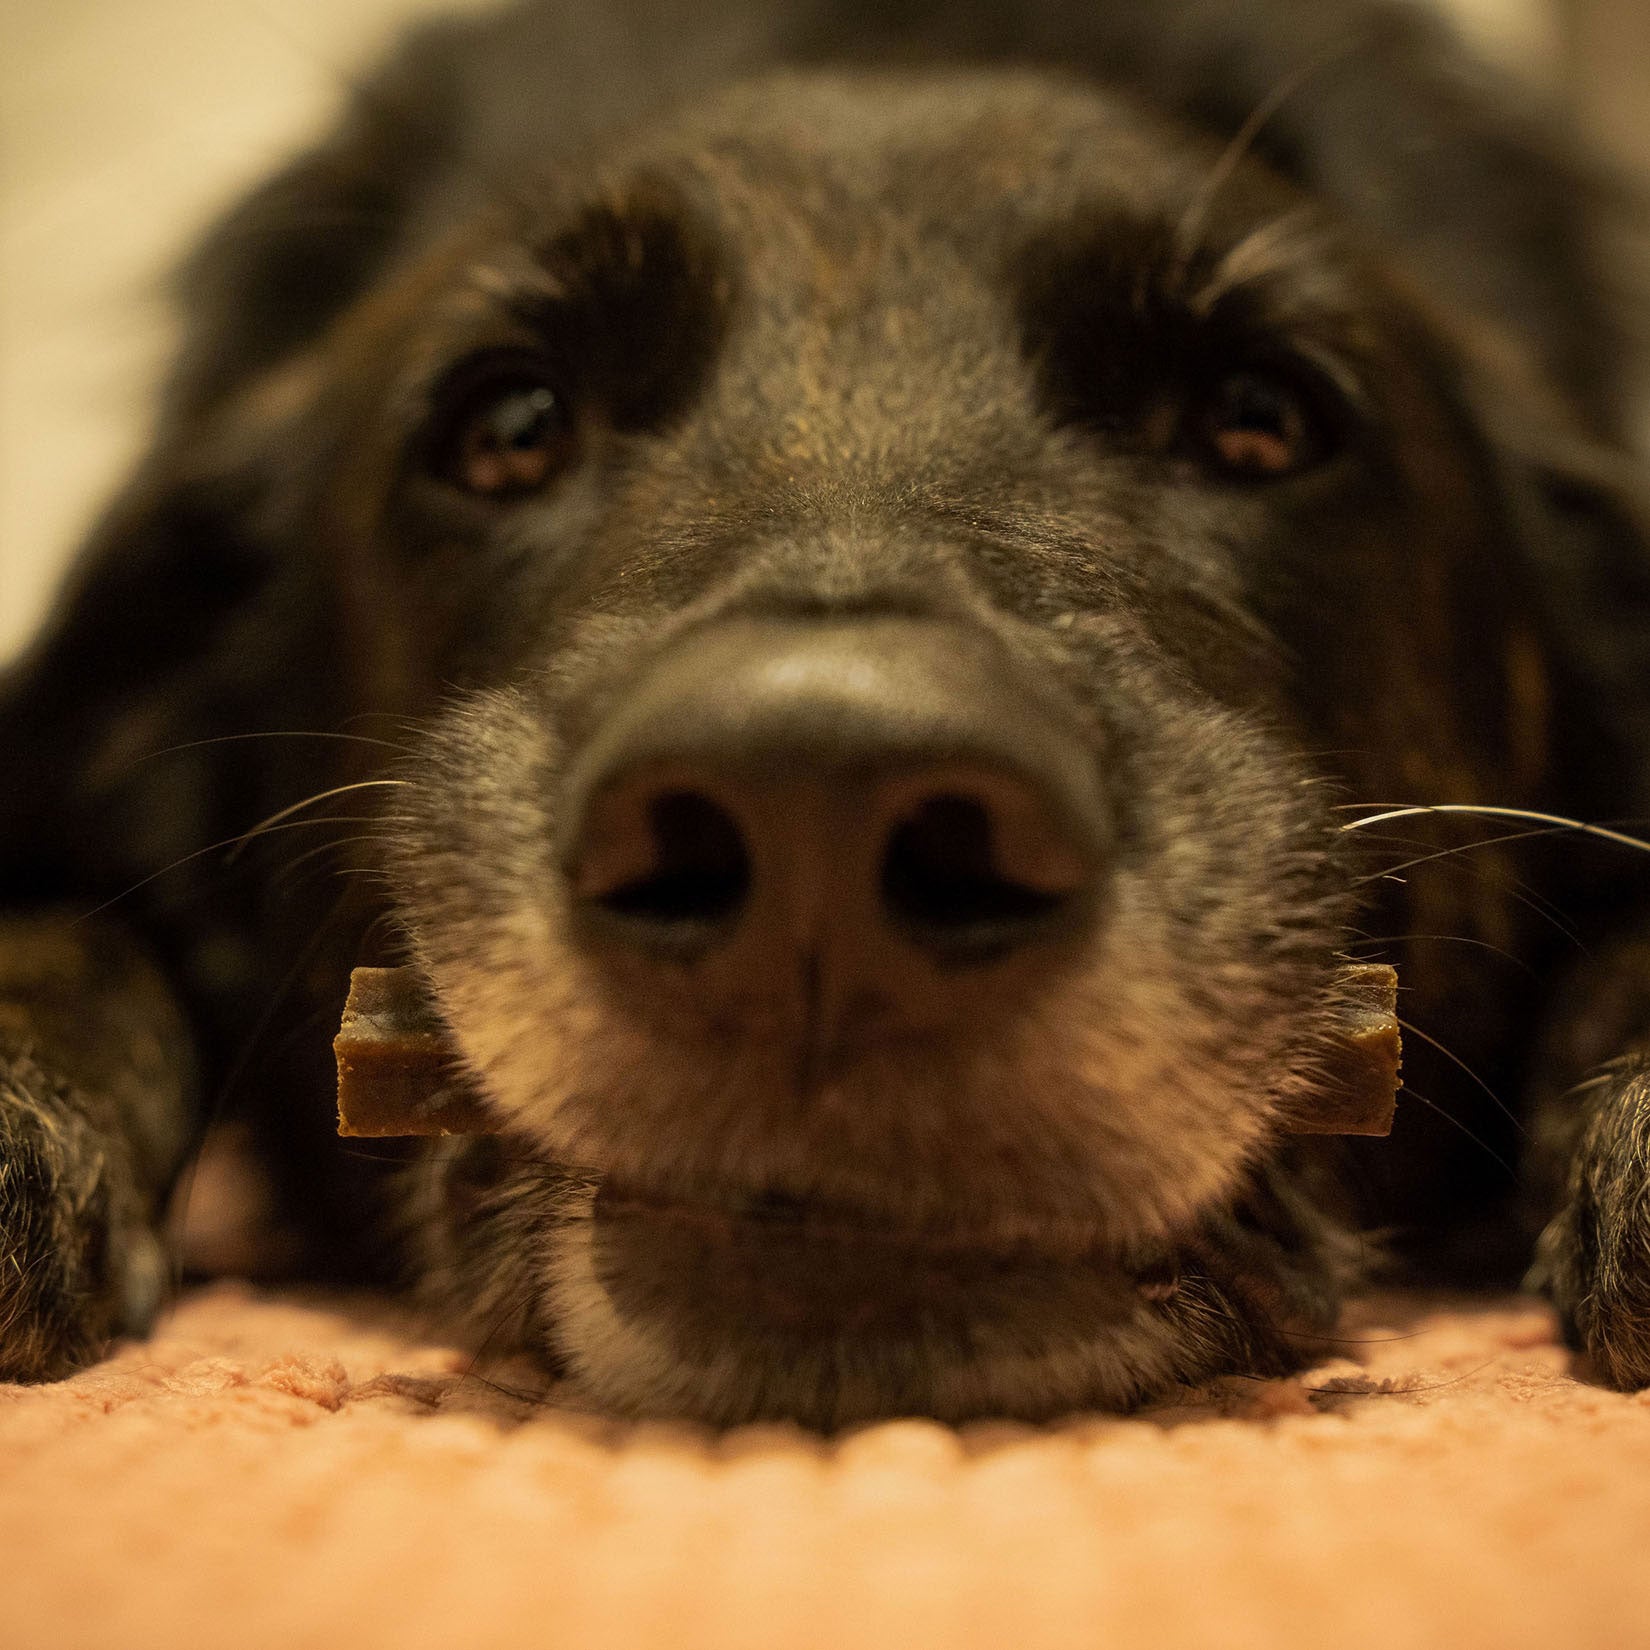 Bellfor Dental Sticks - natürliche Zahnreinigung für Hunde